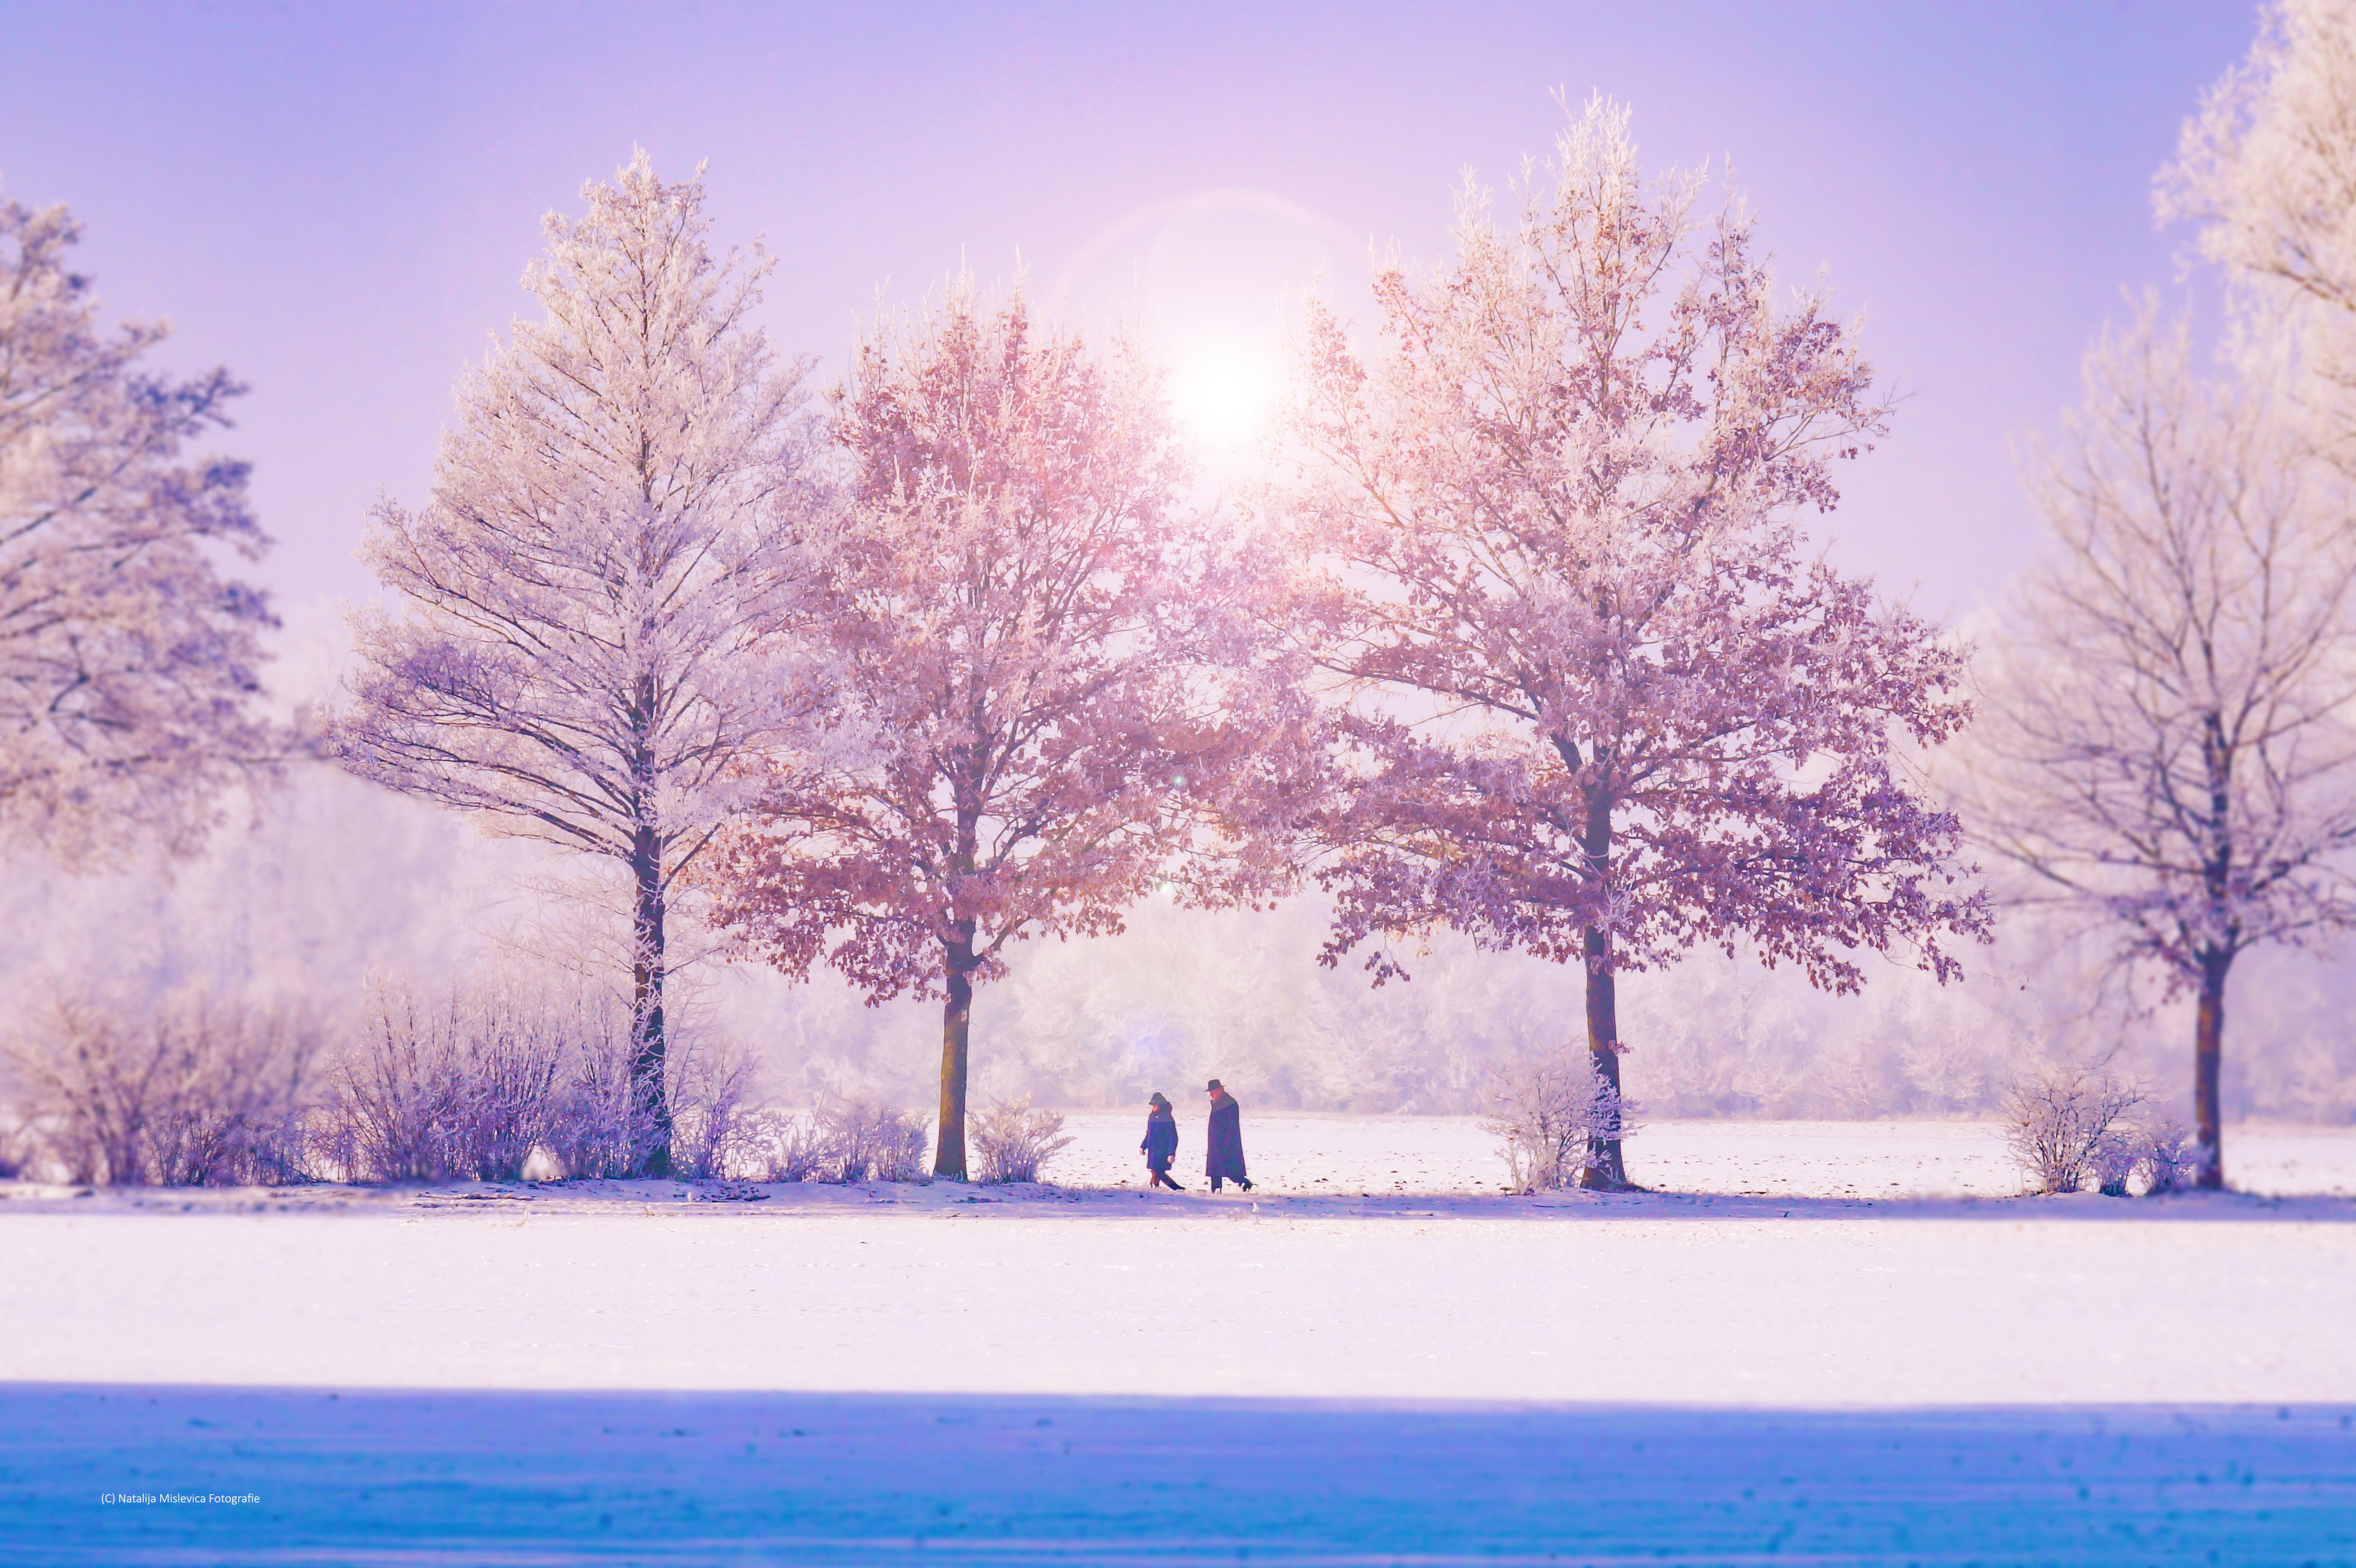 Fondos de invierno: 30 imágenes impresionantes para la temporada de frío